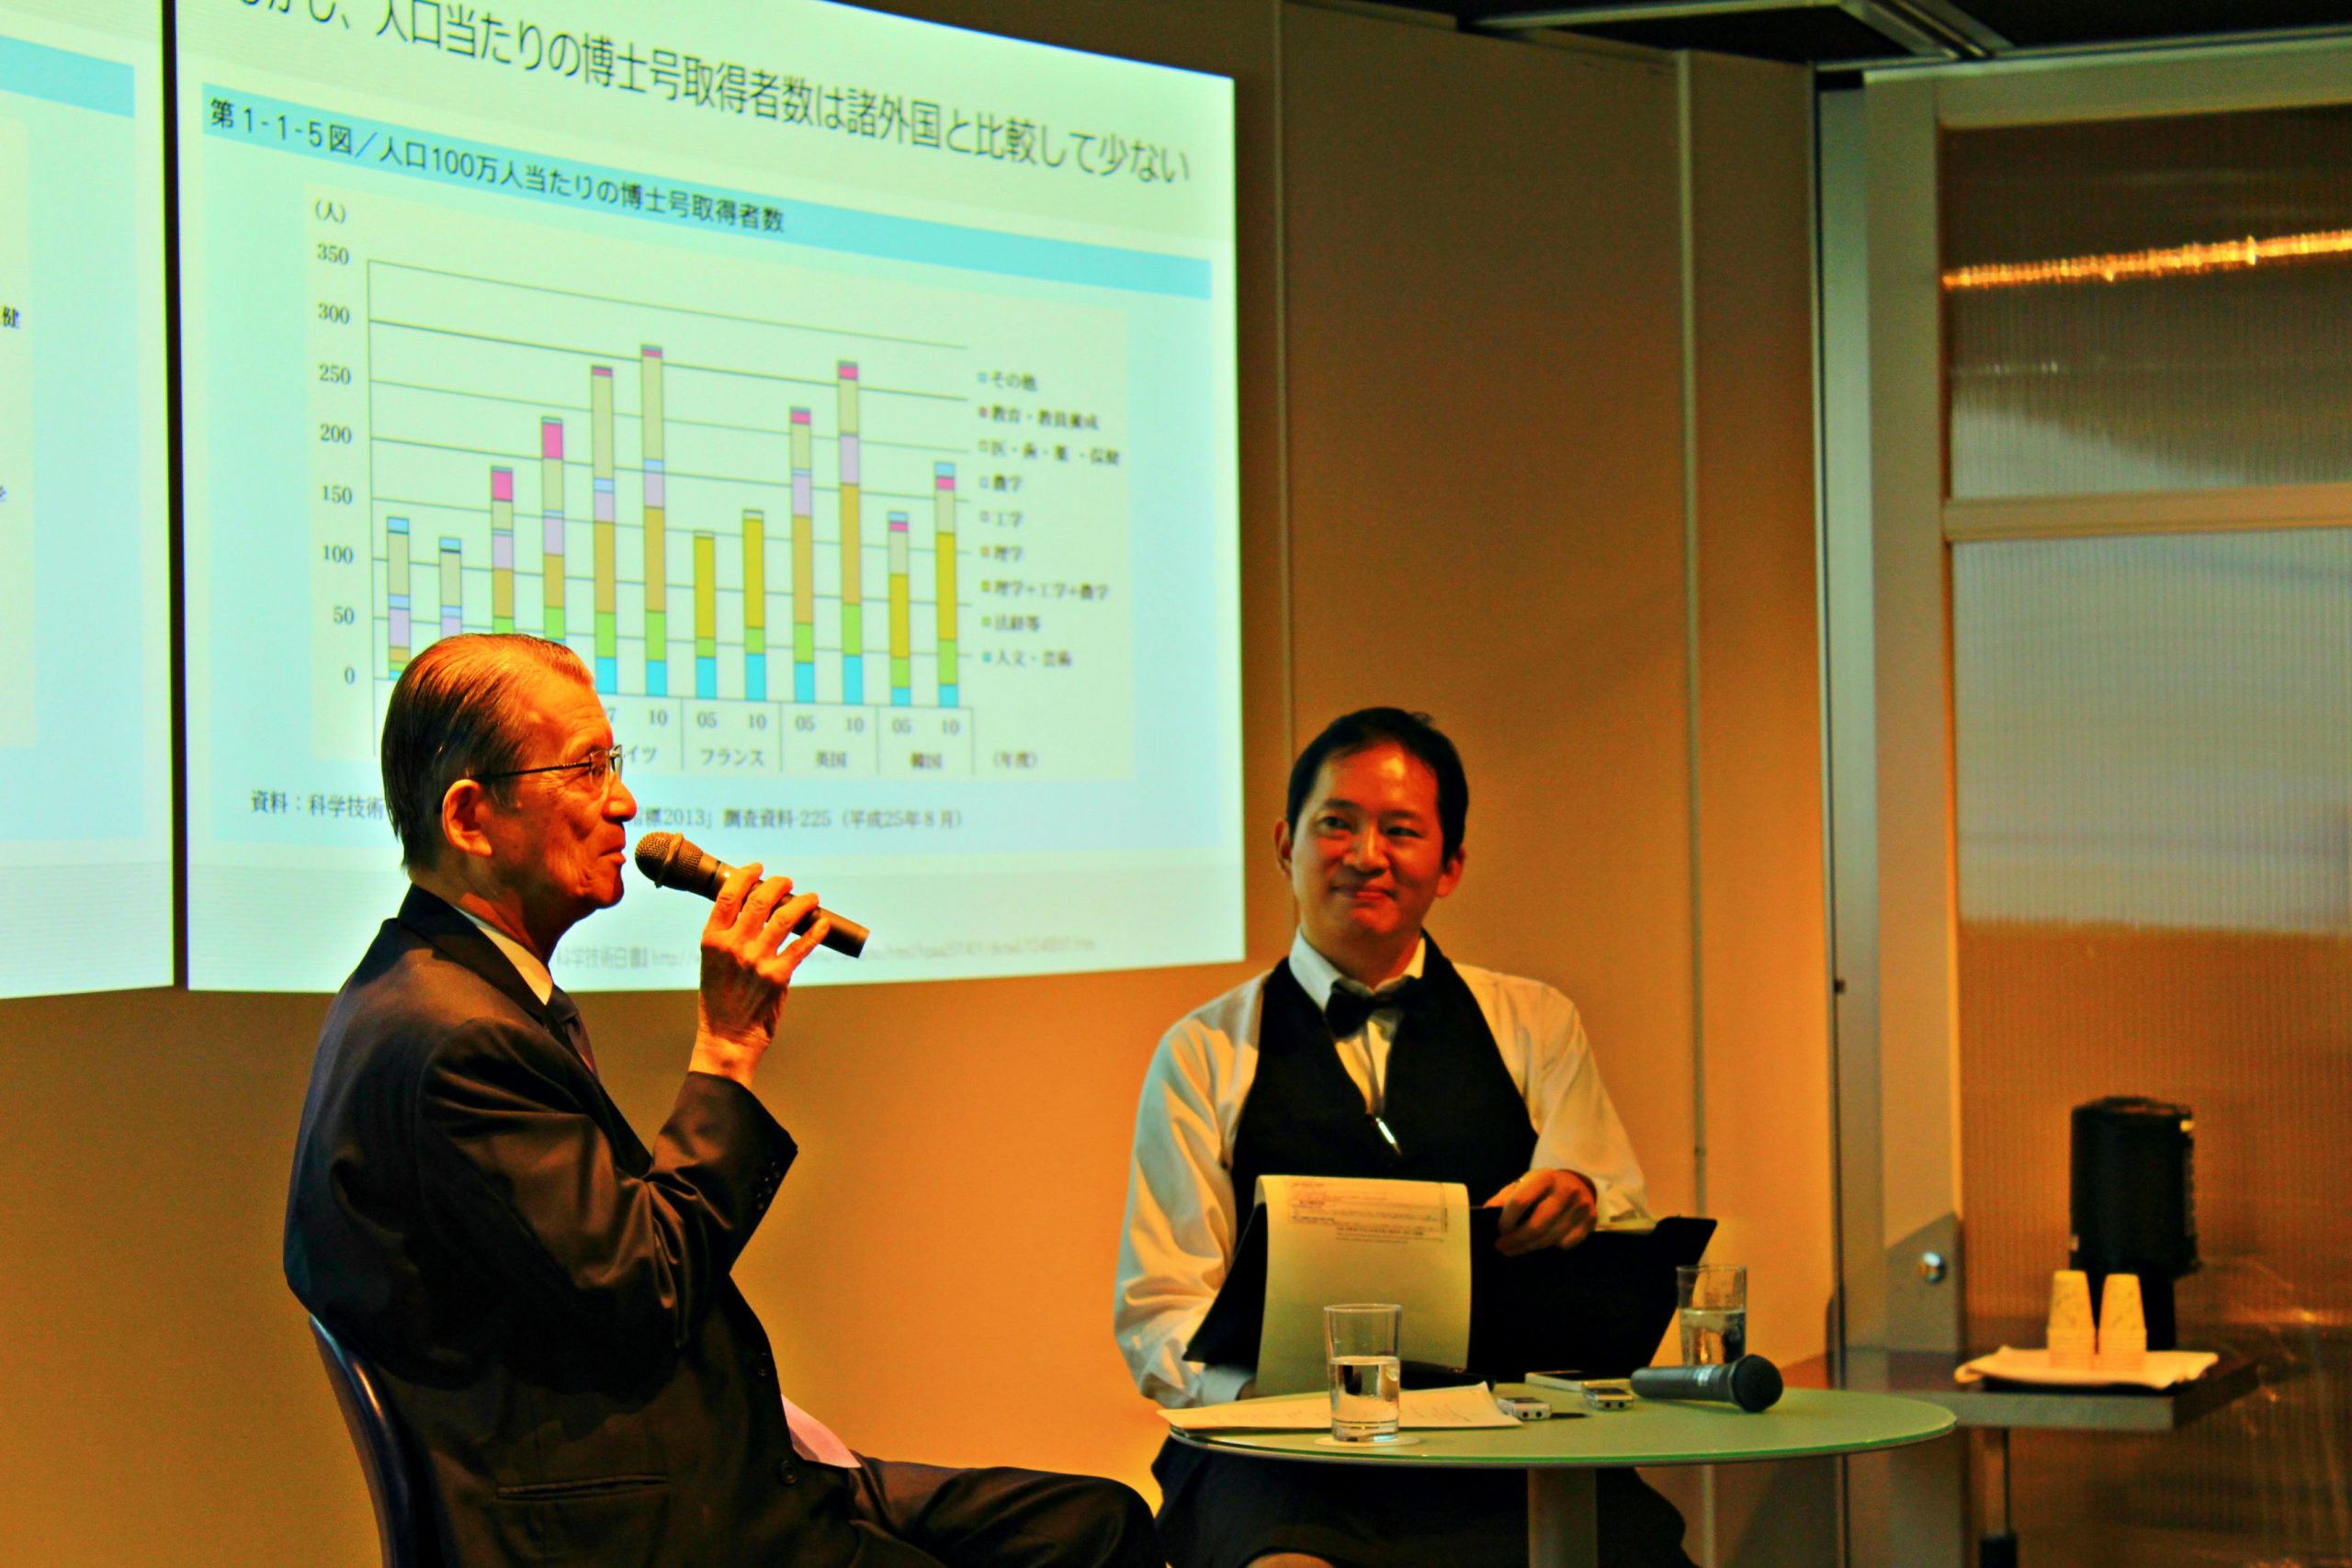 9月11日開催サイエンストークス・バー with 岸輝雄氏～日本の科学技術政策の課題（1）人材育成とポスドク問題について